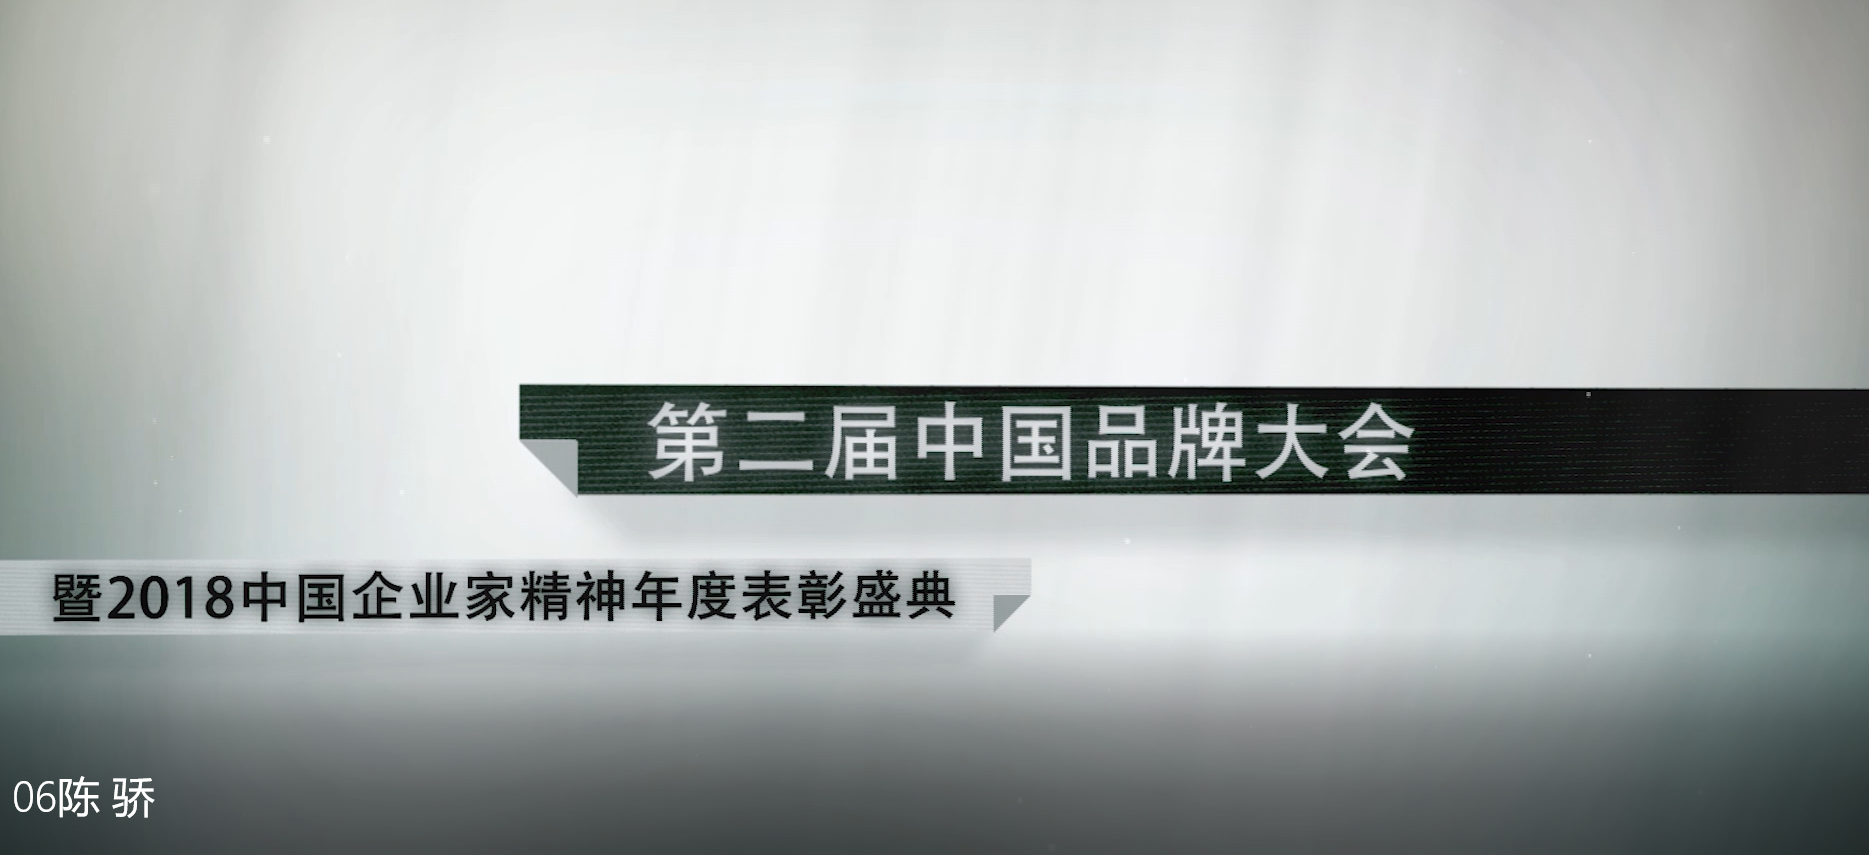 中国匠心品牌福晶板材在中国品牌大会获匠心品牌称号陈骄接受采访无删减